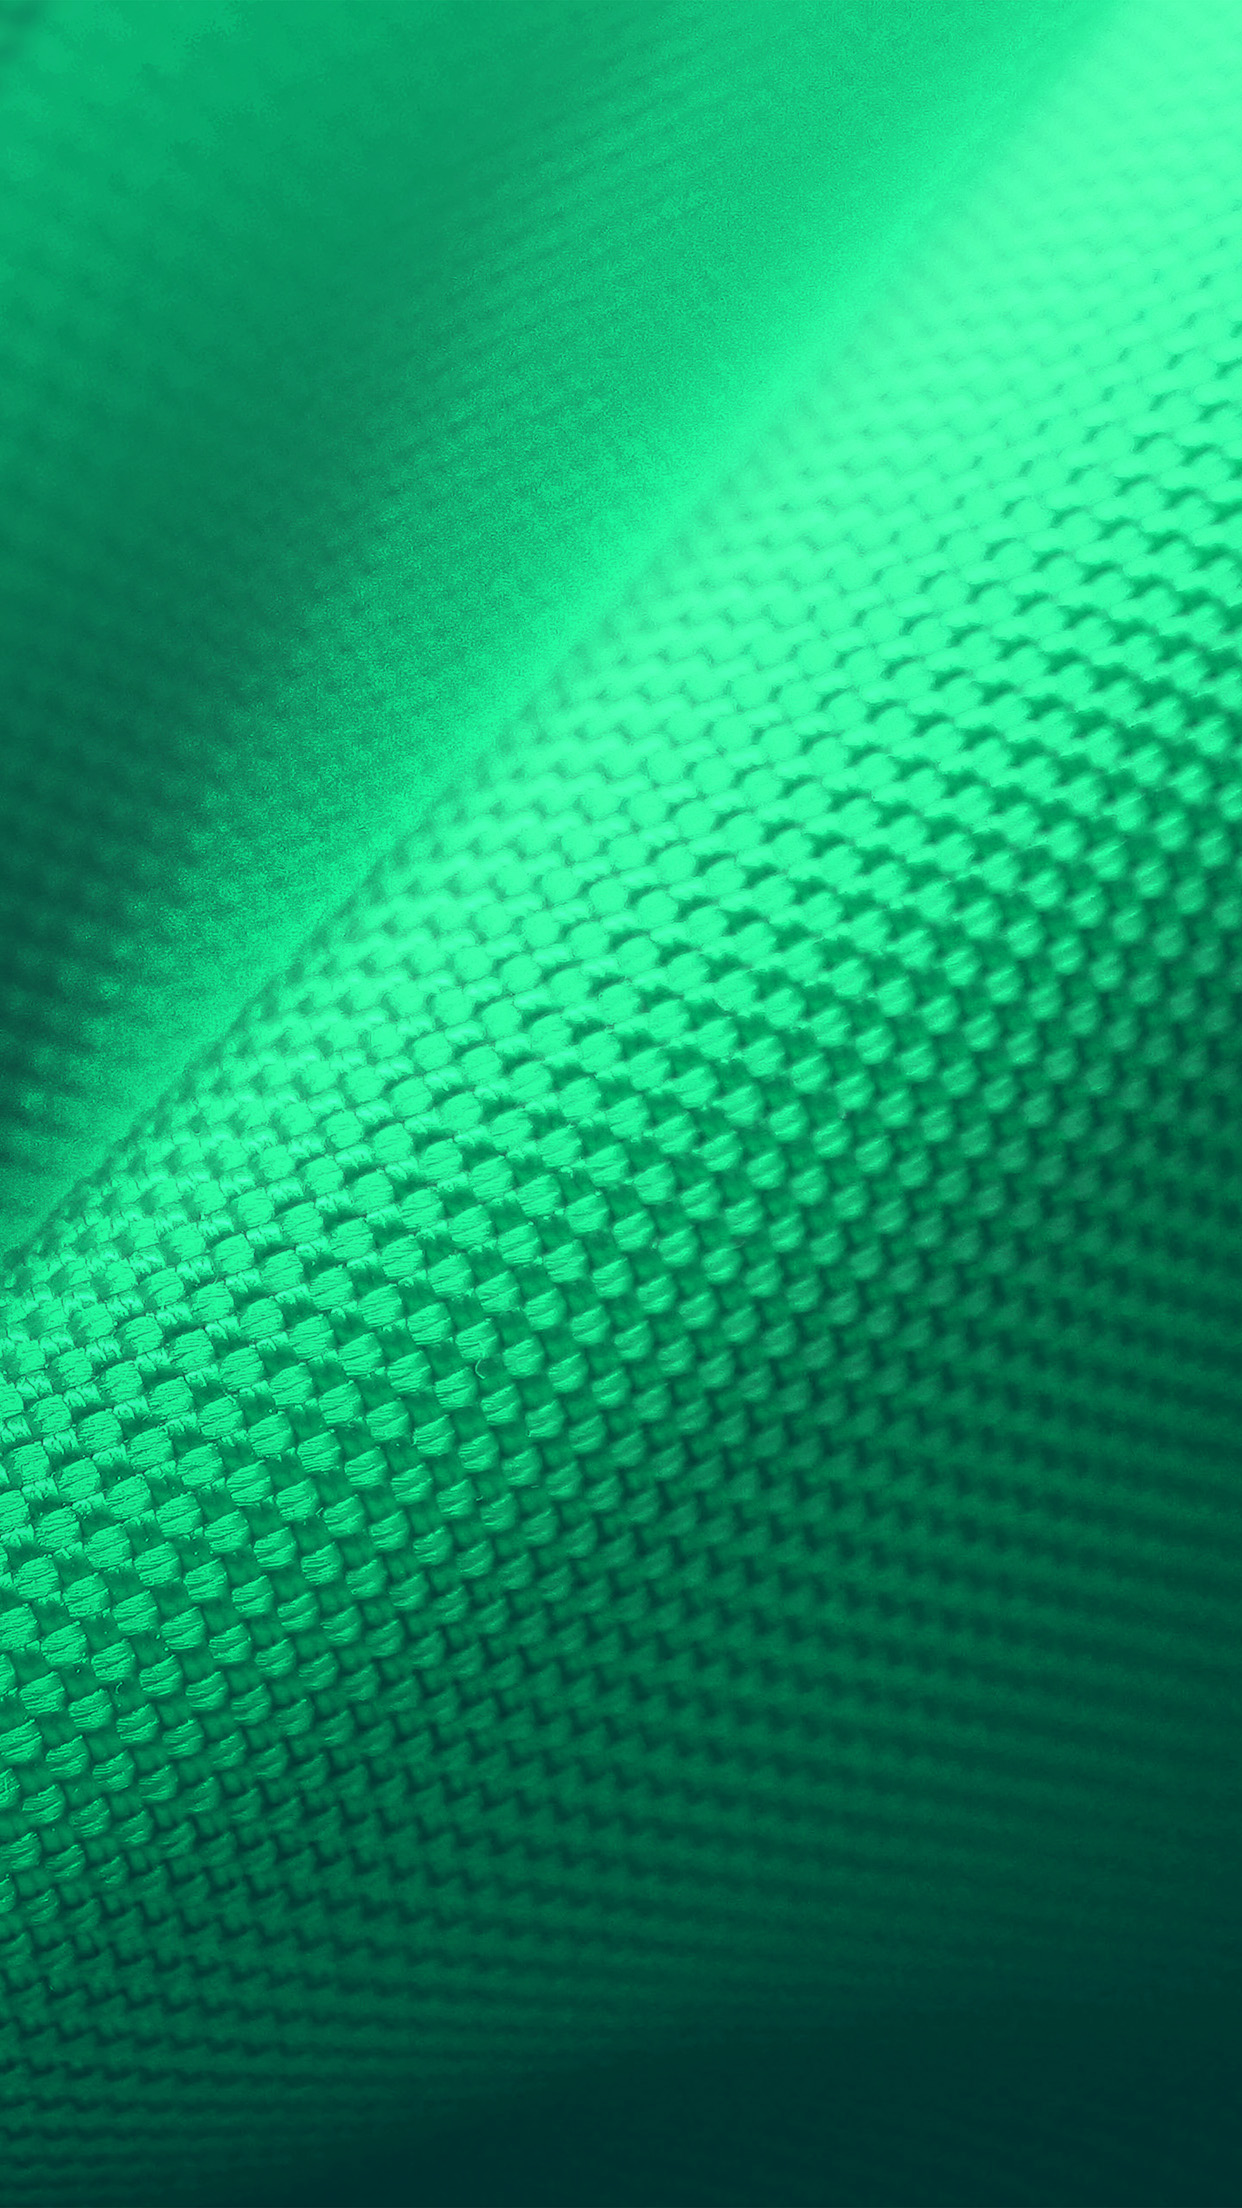 点線の緑色パターン素材テクスチャiphone 6 Plus壁紙 1242 2208 Iphoneチーズ